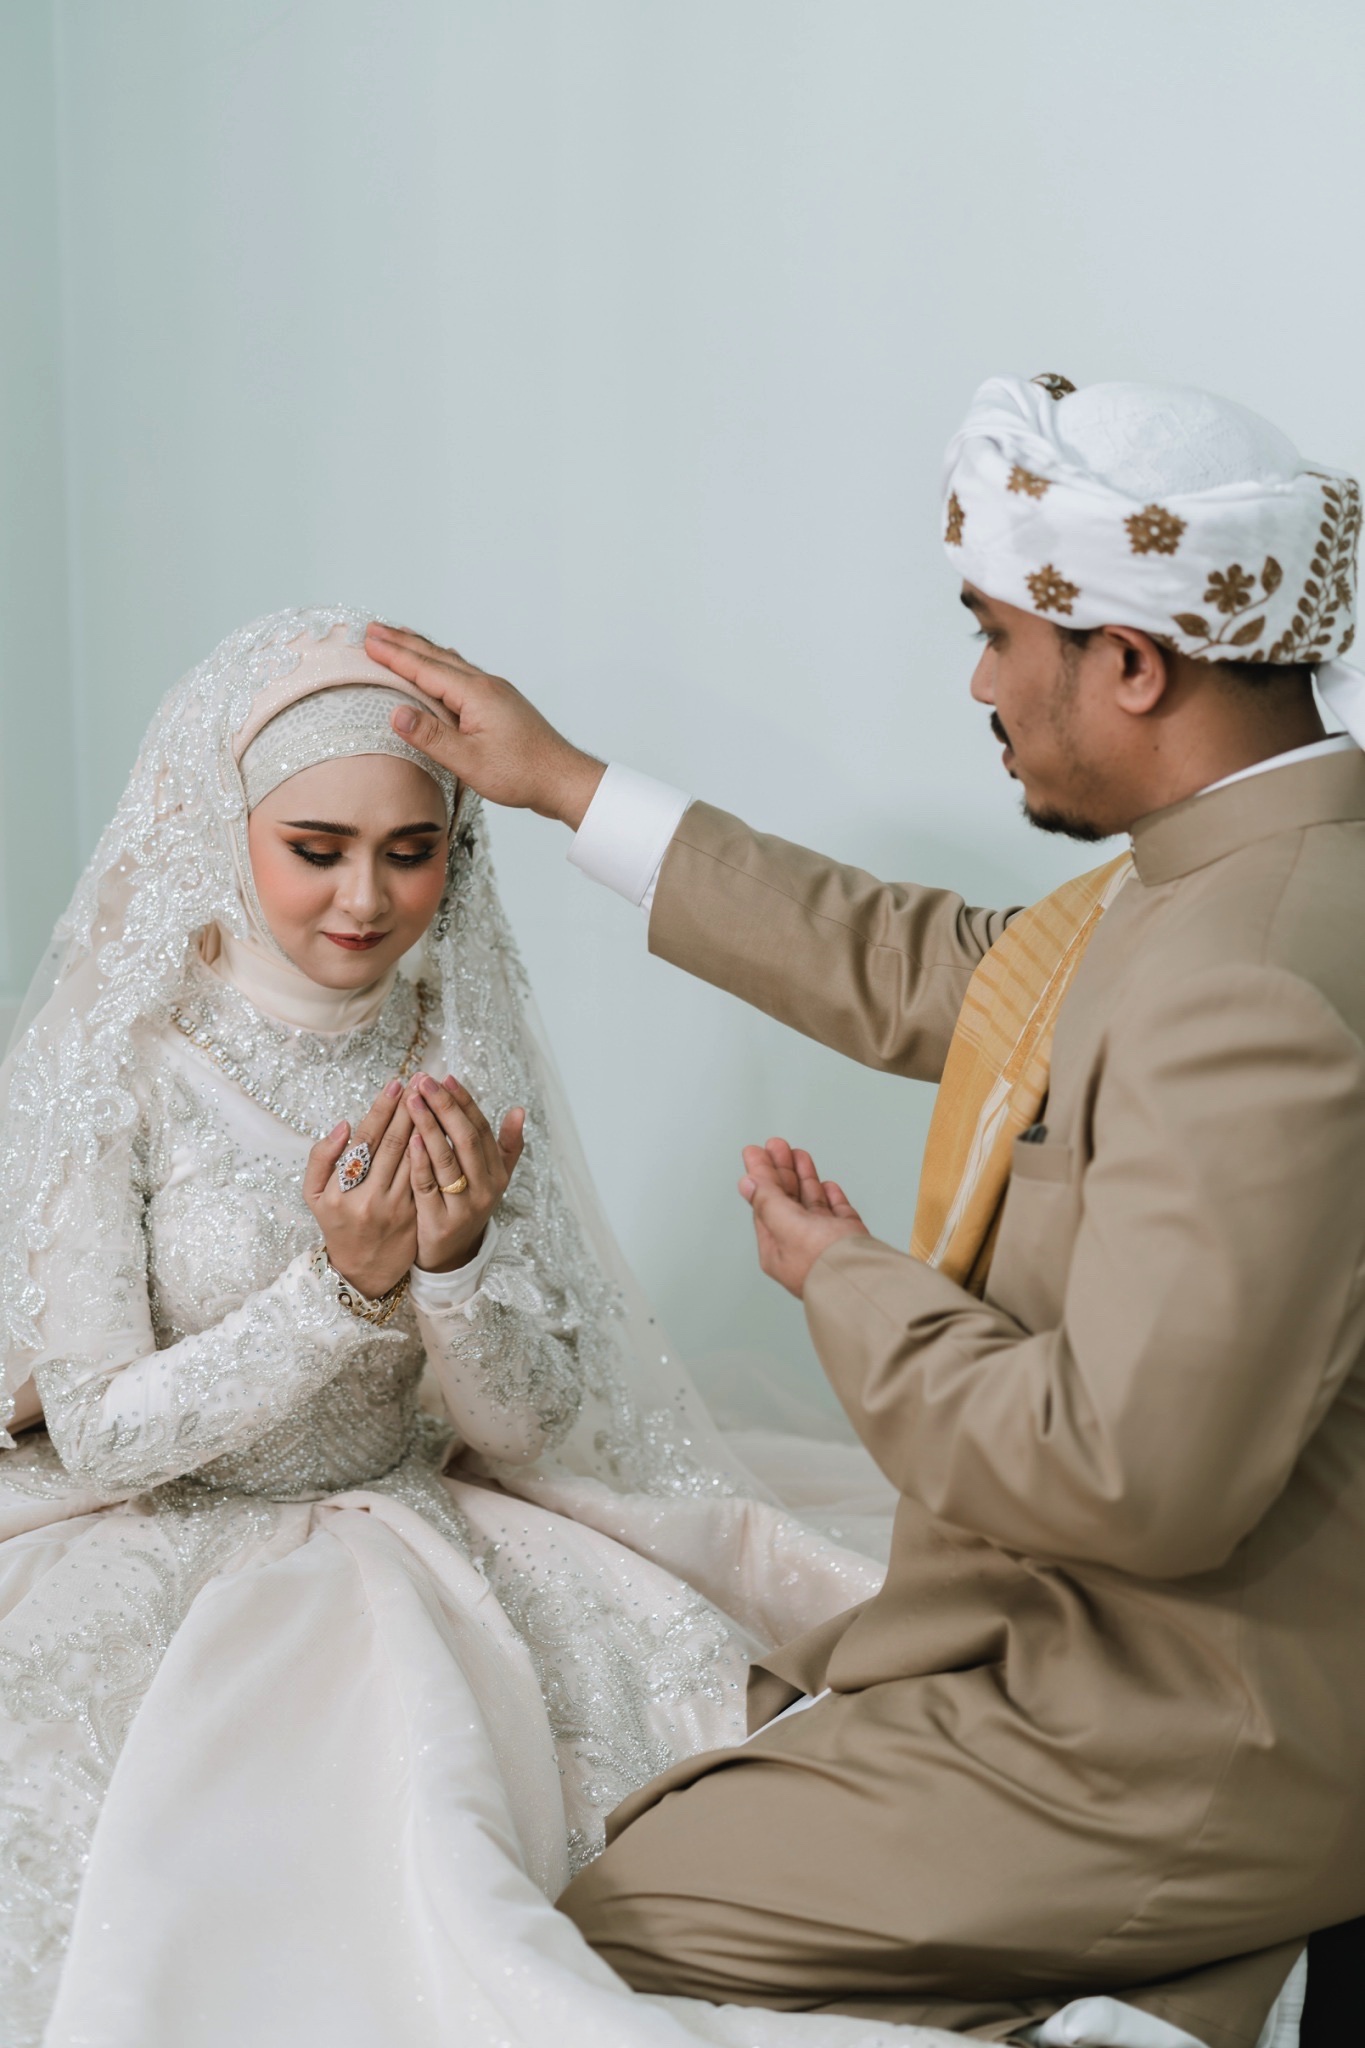 พิธีแต่งงานแบบอิสลาม มีขั้นตอนอย่างไรบ้าง| as your mind wedding planner